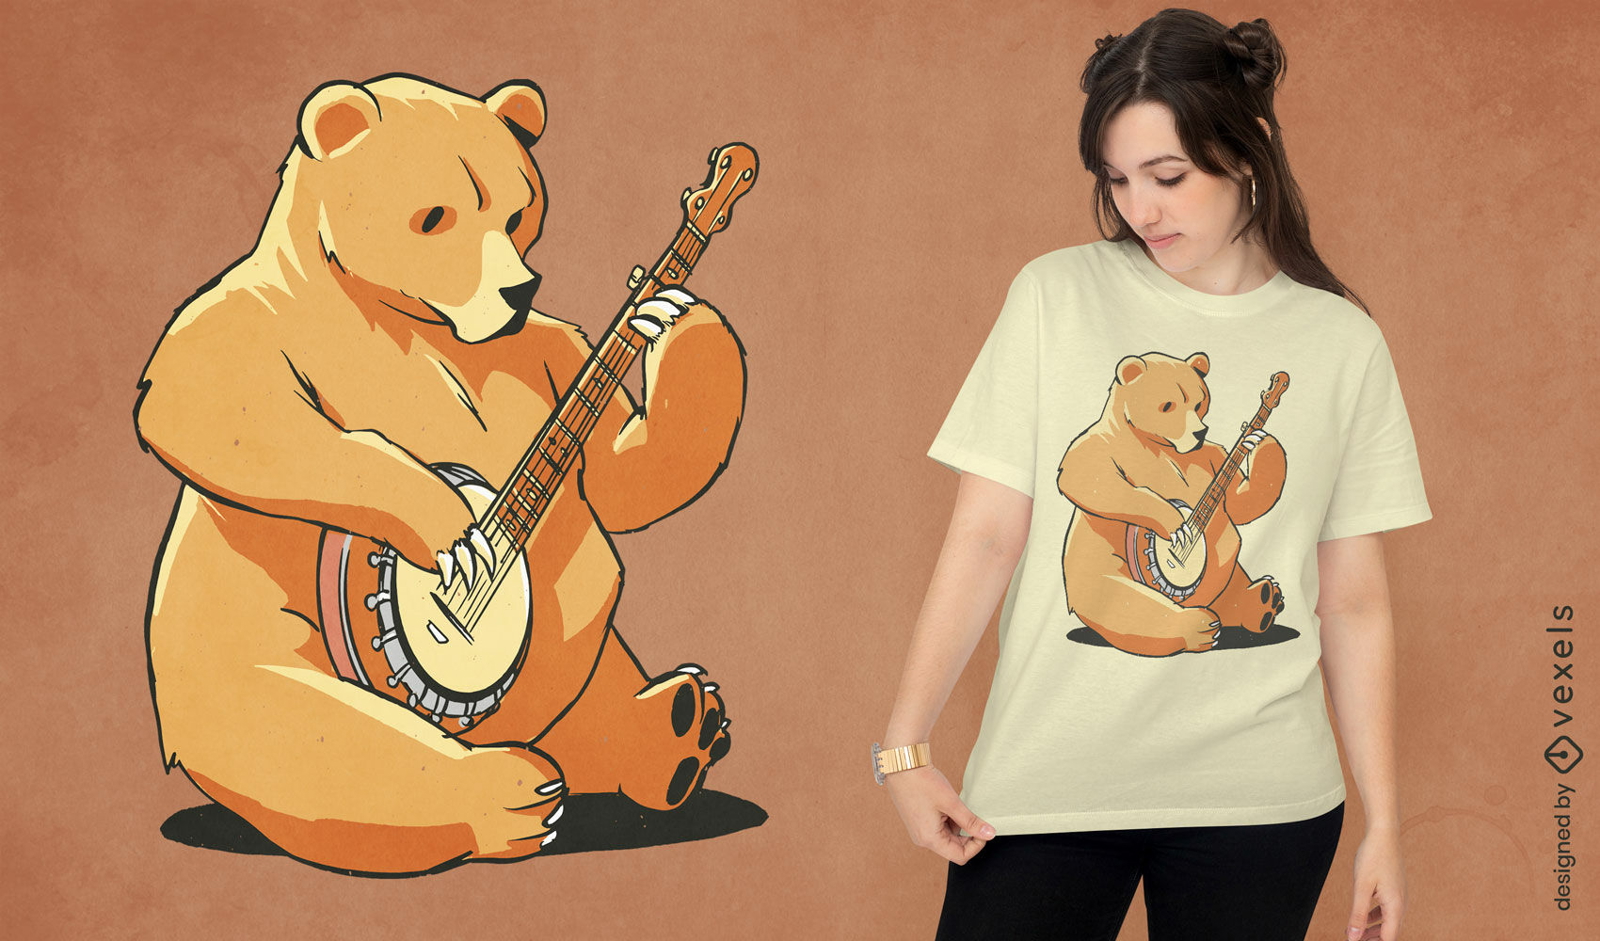 Bear playing banjo t-shirt design